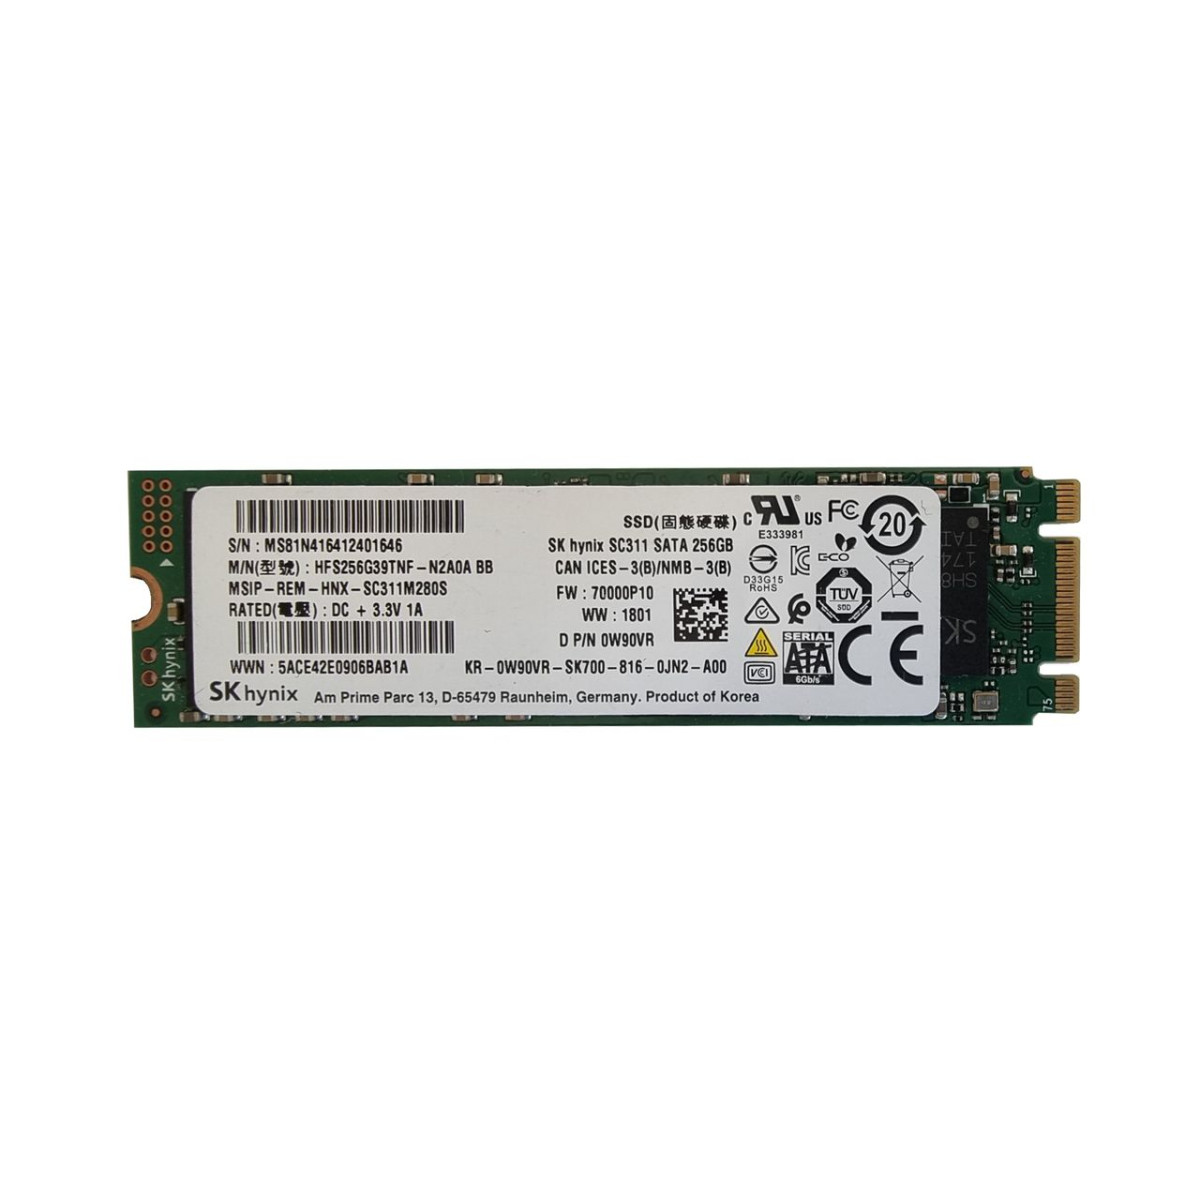 DYSK DELL HYNIX 256GB SSD SATA M.2 2280 MLC 0W90VR